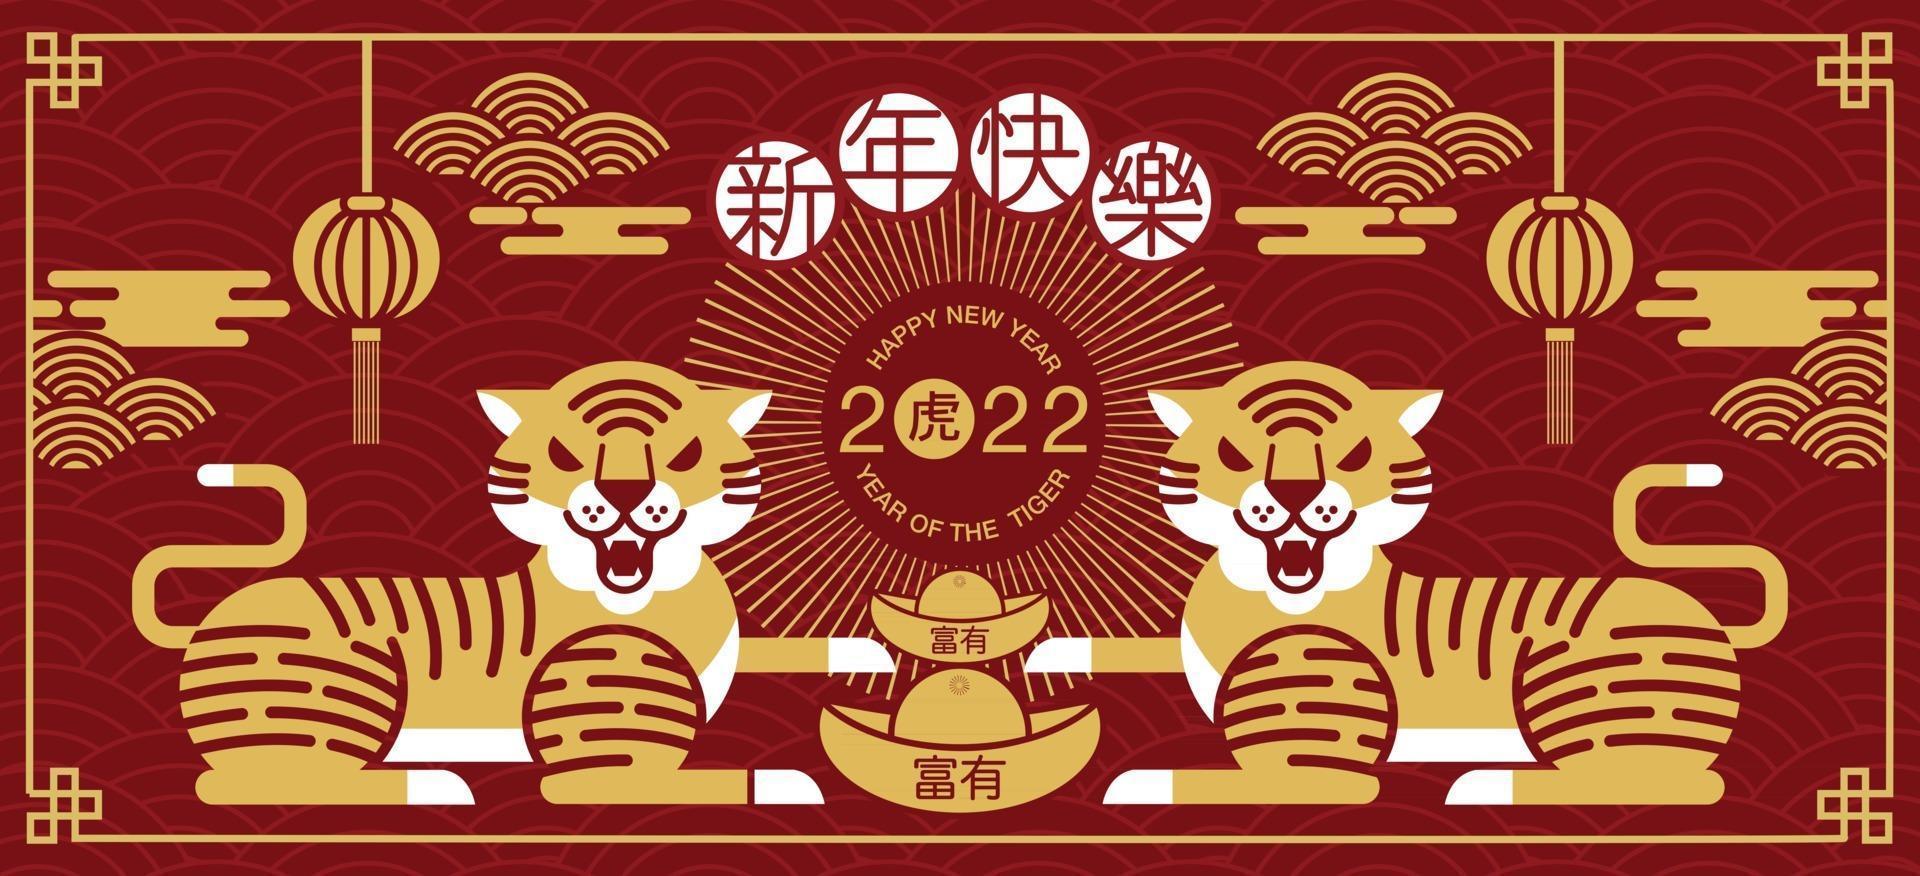 bonne année nouvel an chinois 2022 année du personnage de dessin animé de tigre vecteur